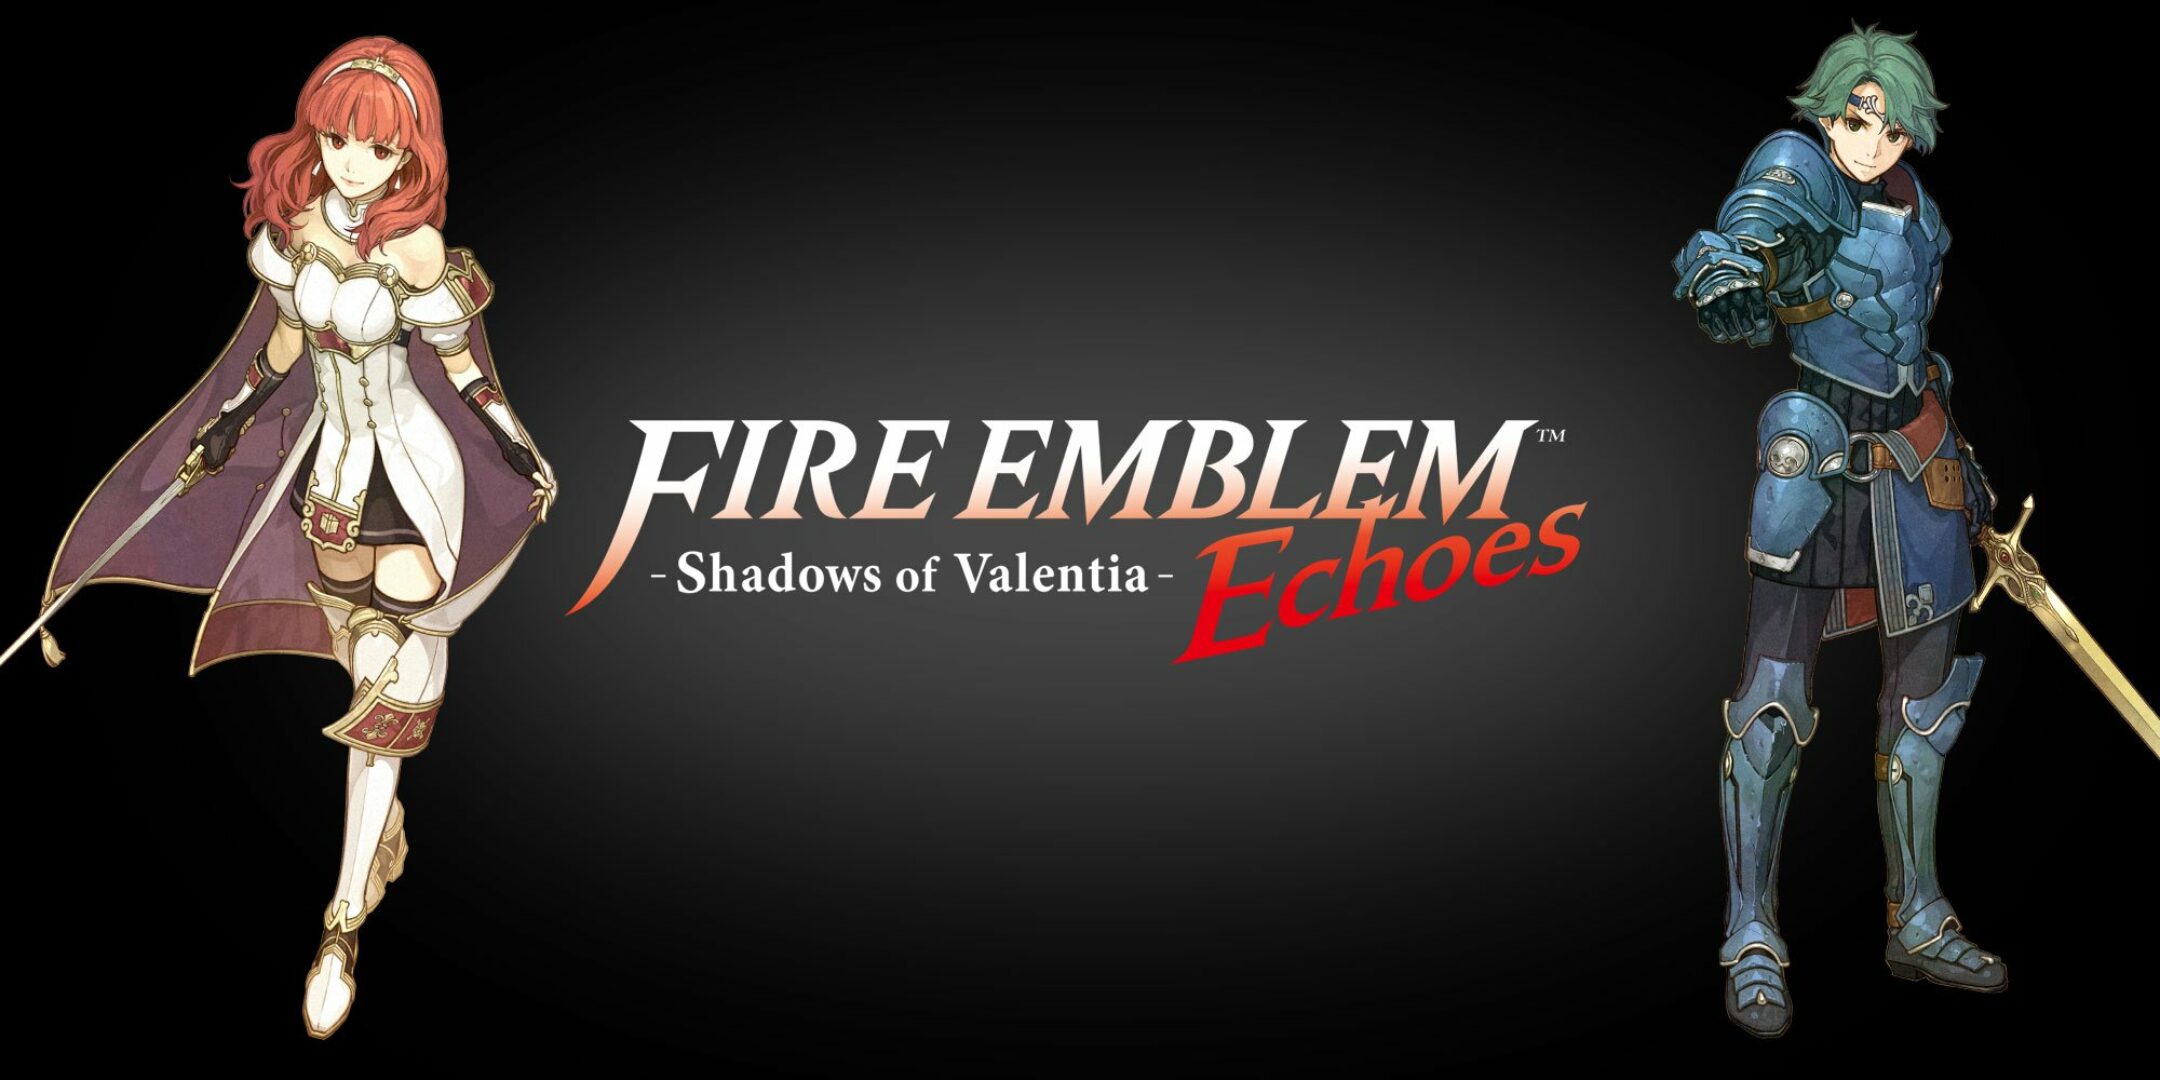 Fire Emblem: Shadows of Valentia Announced for Nintendo 3DS